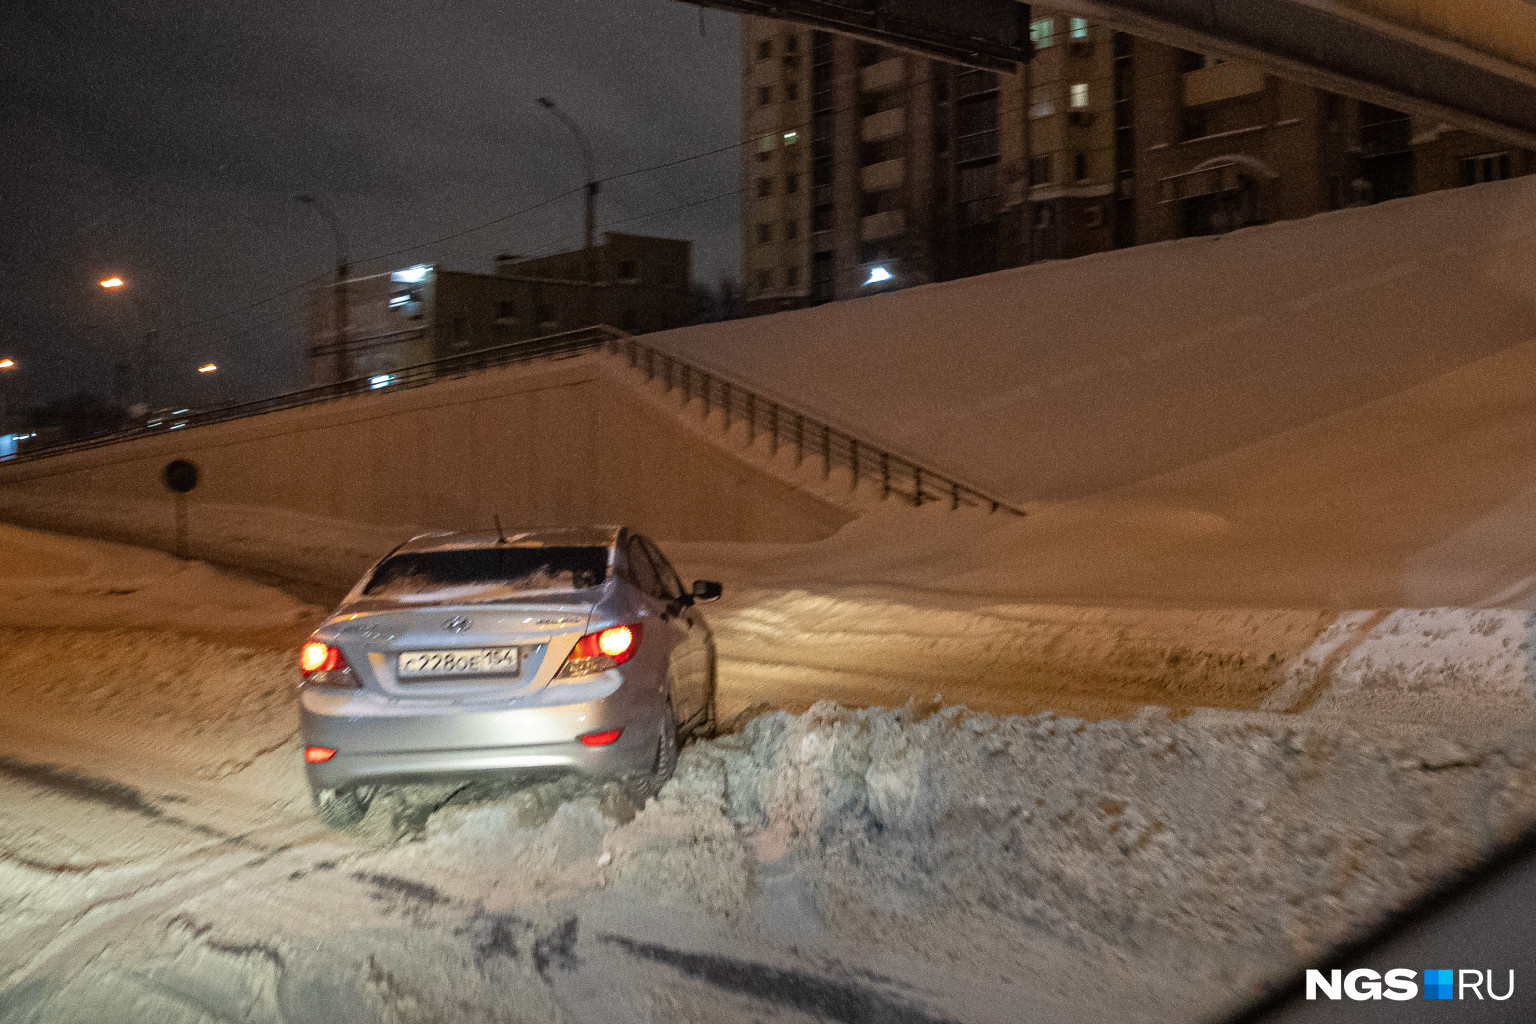 Это улица Ипподромская, и она не чищена совсем. Автомобили просто-напросто застревают в снегу прямо на дороге